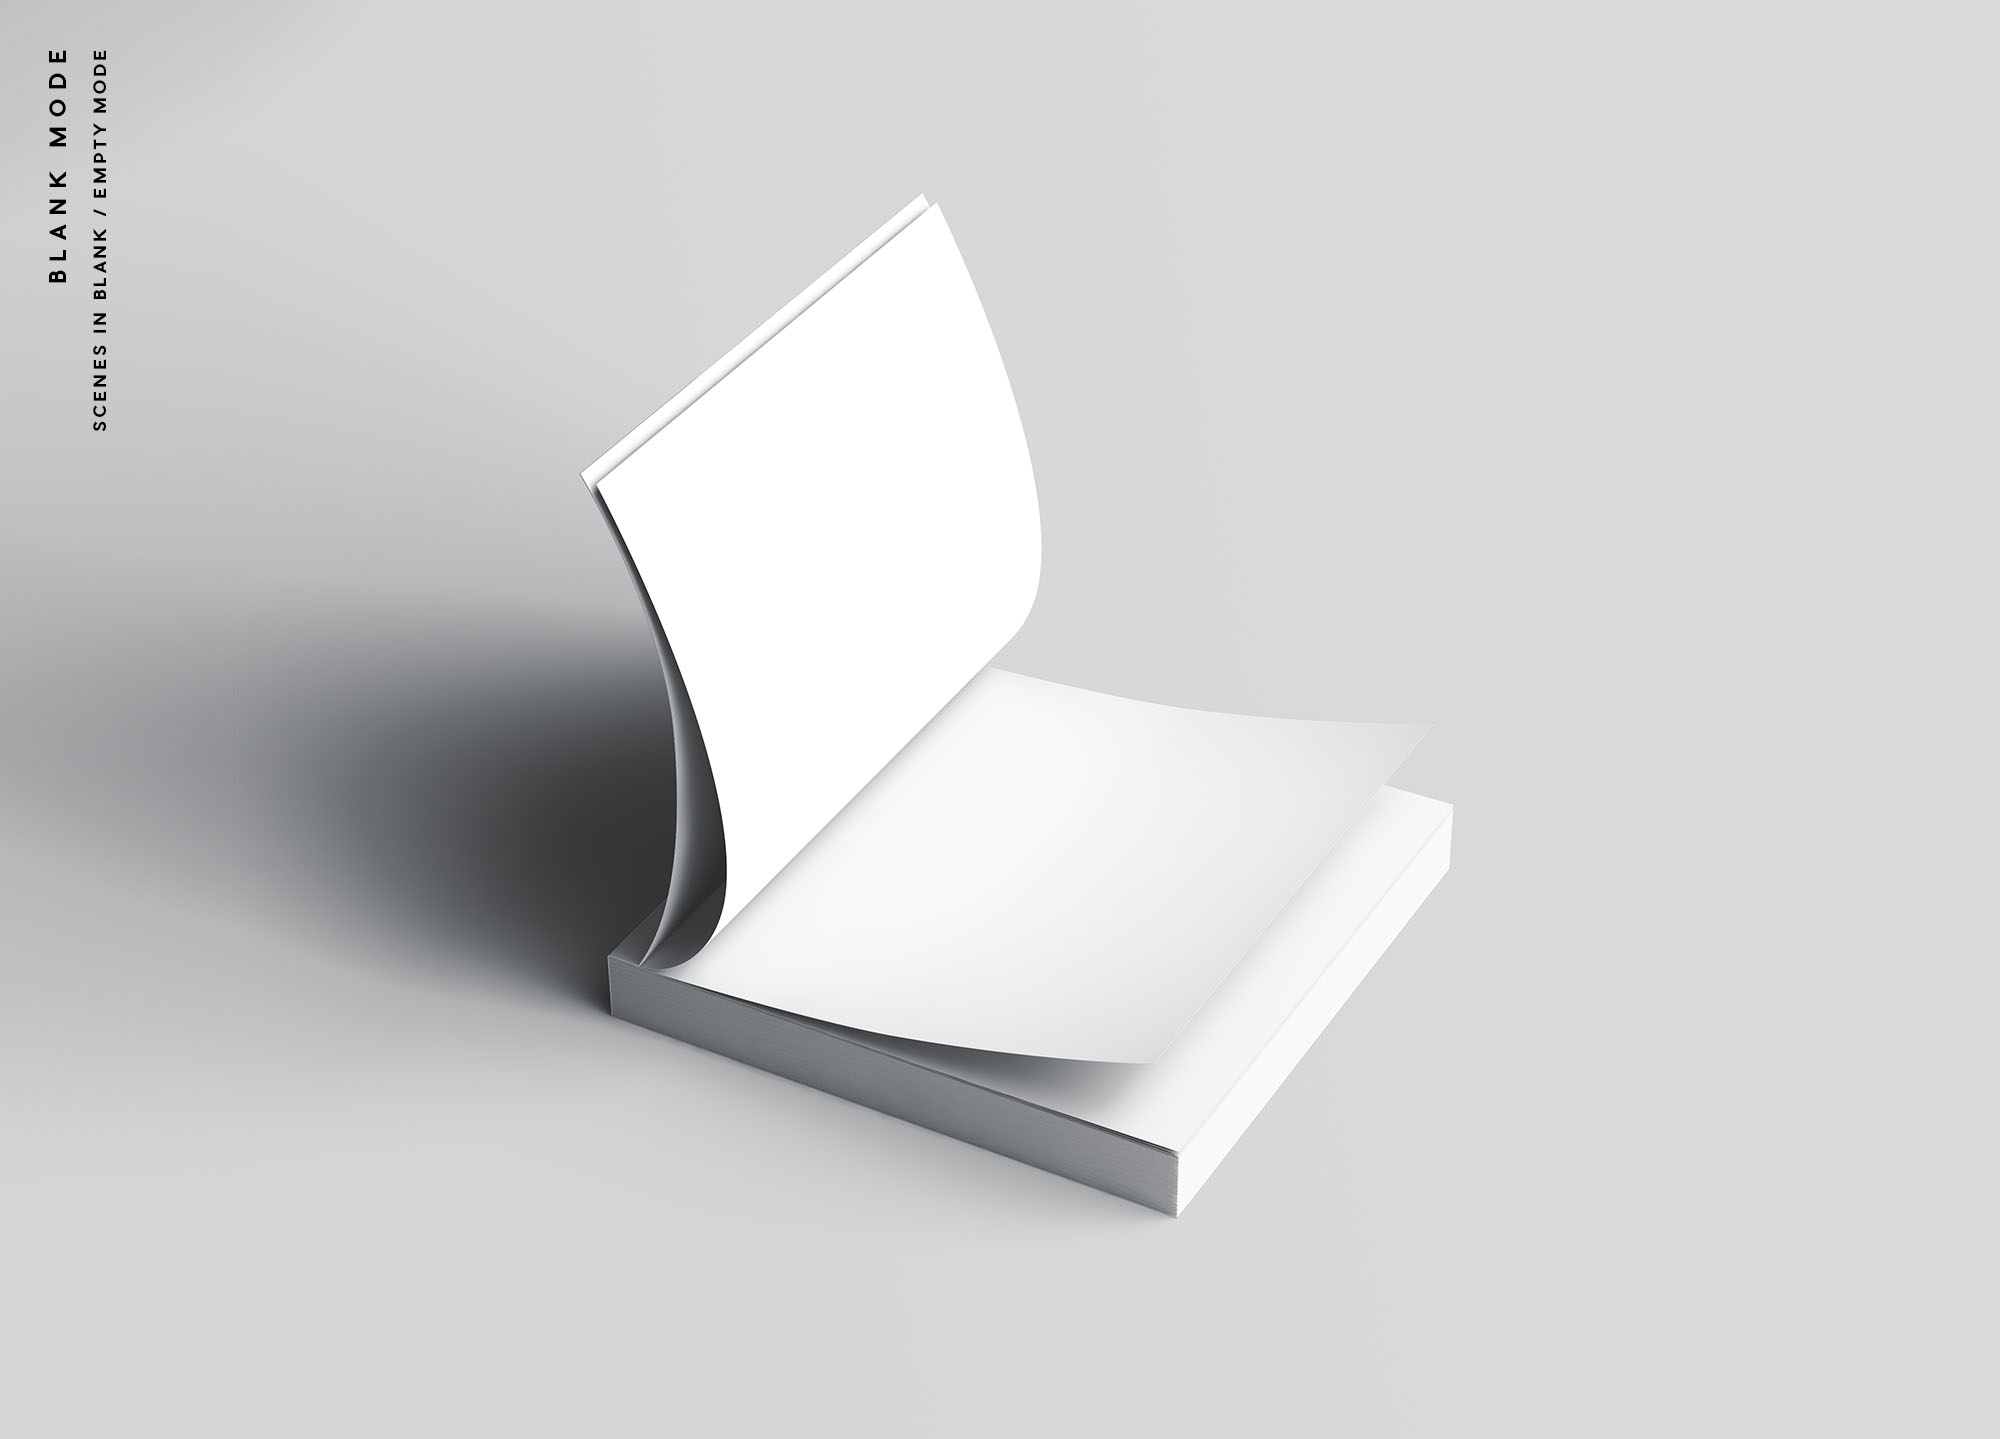 方形软封图书内页版式设计效果图样机第一素材精选 Square Softcover Book Mockup插图(9)